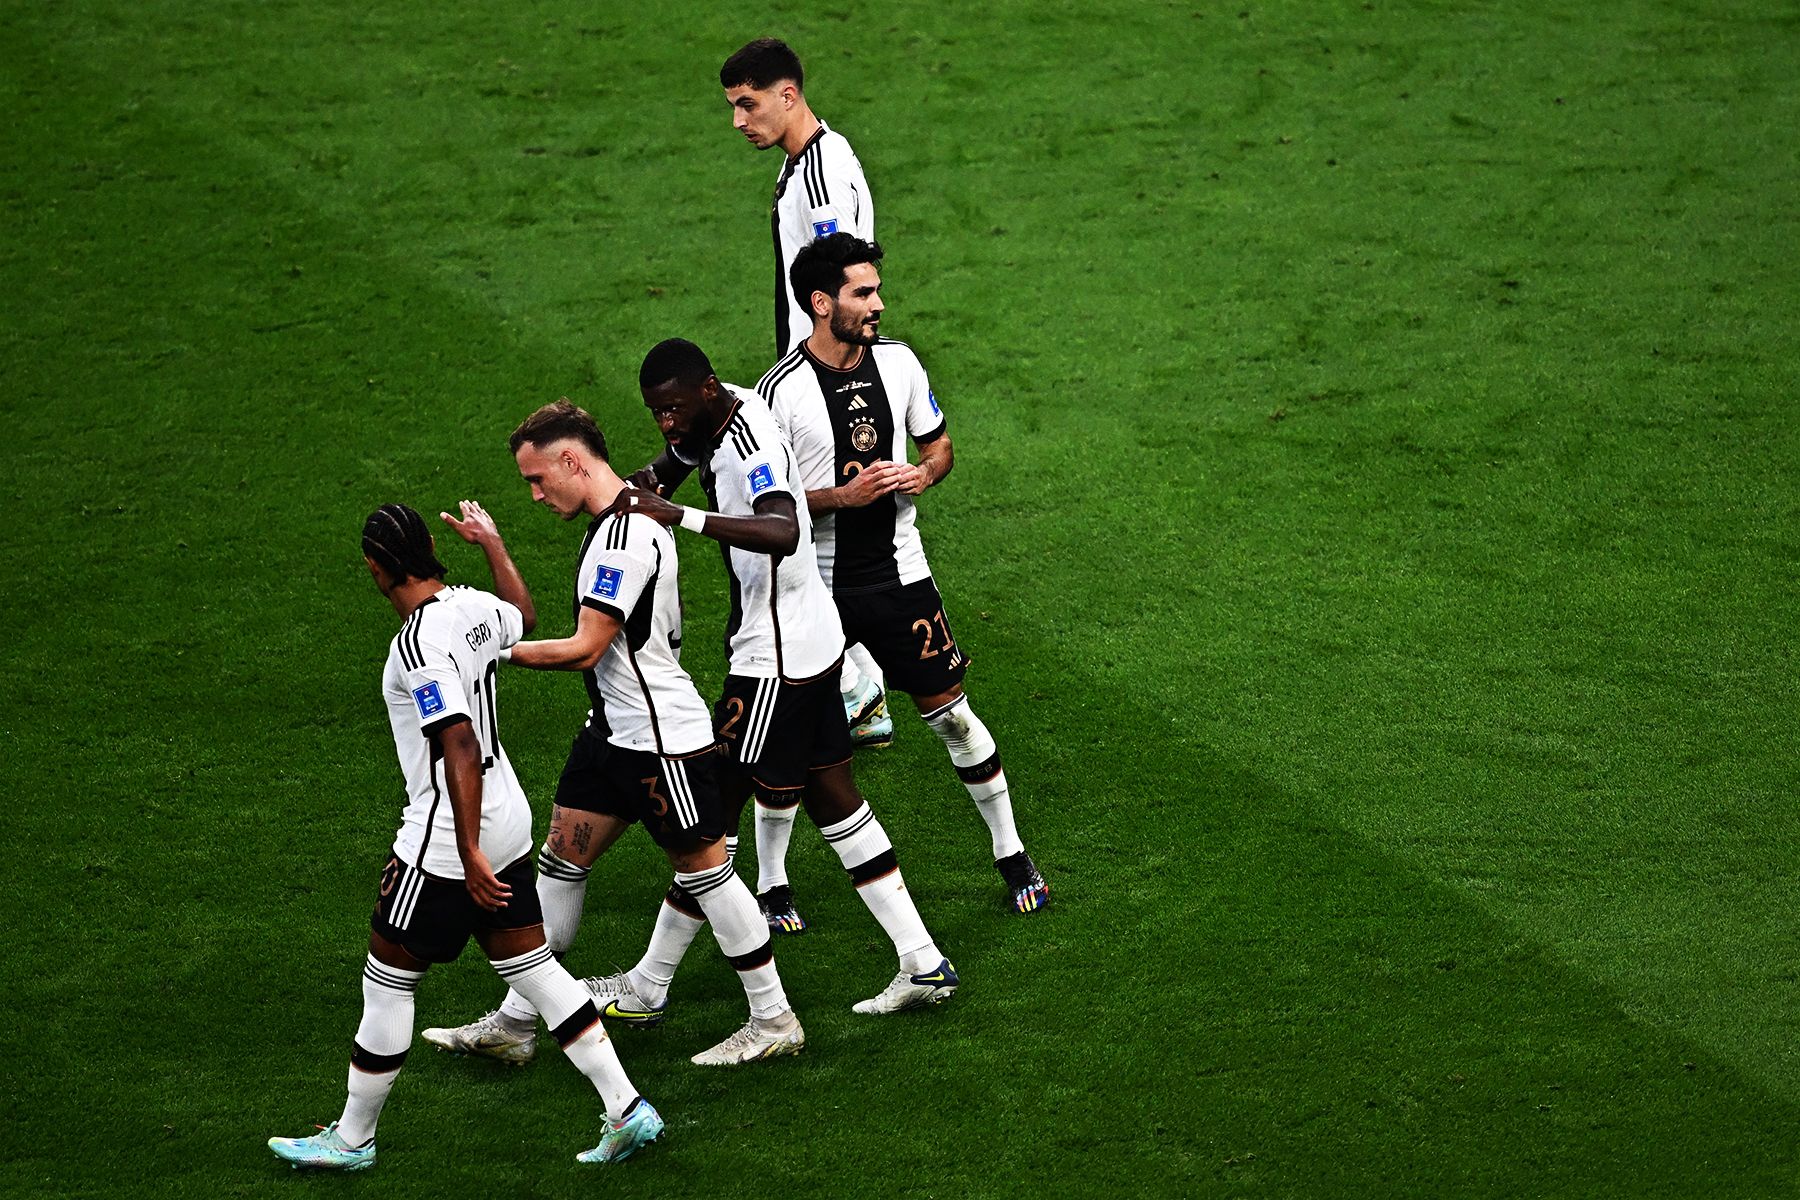 Аргентина и Германия с поражений стартовали на ЧМ-2022: есть ли у них шанс на чемпионство